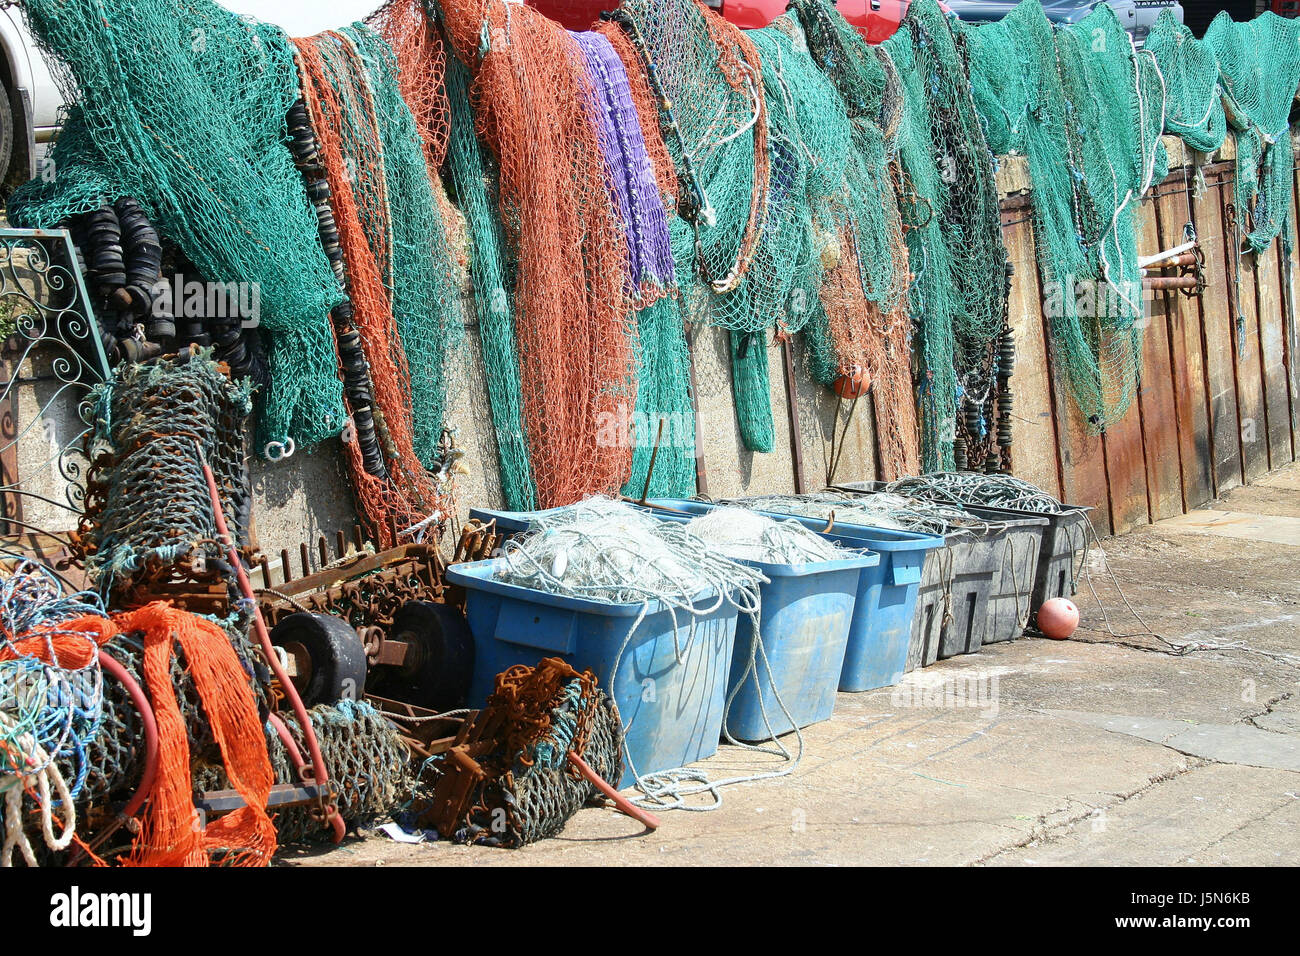 Redes de pesca o de colores de colores colgando en el sol para secar. Foto de stock